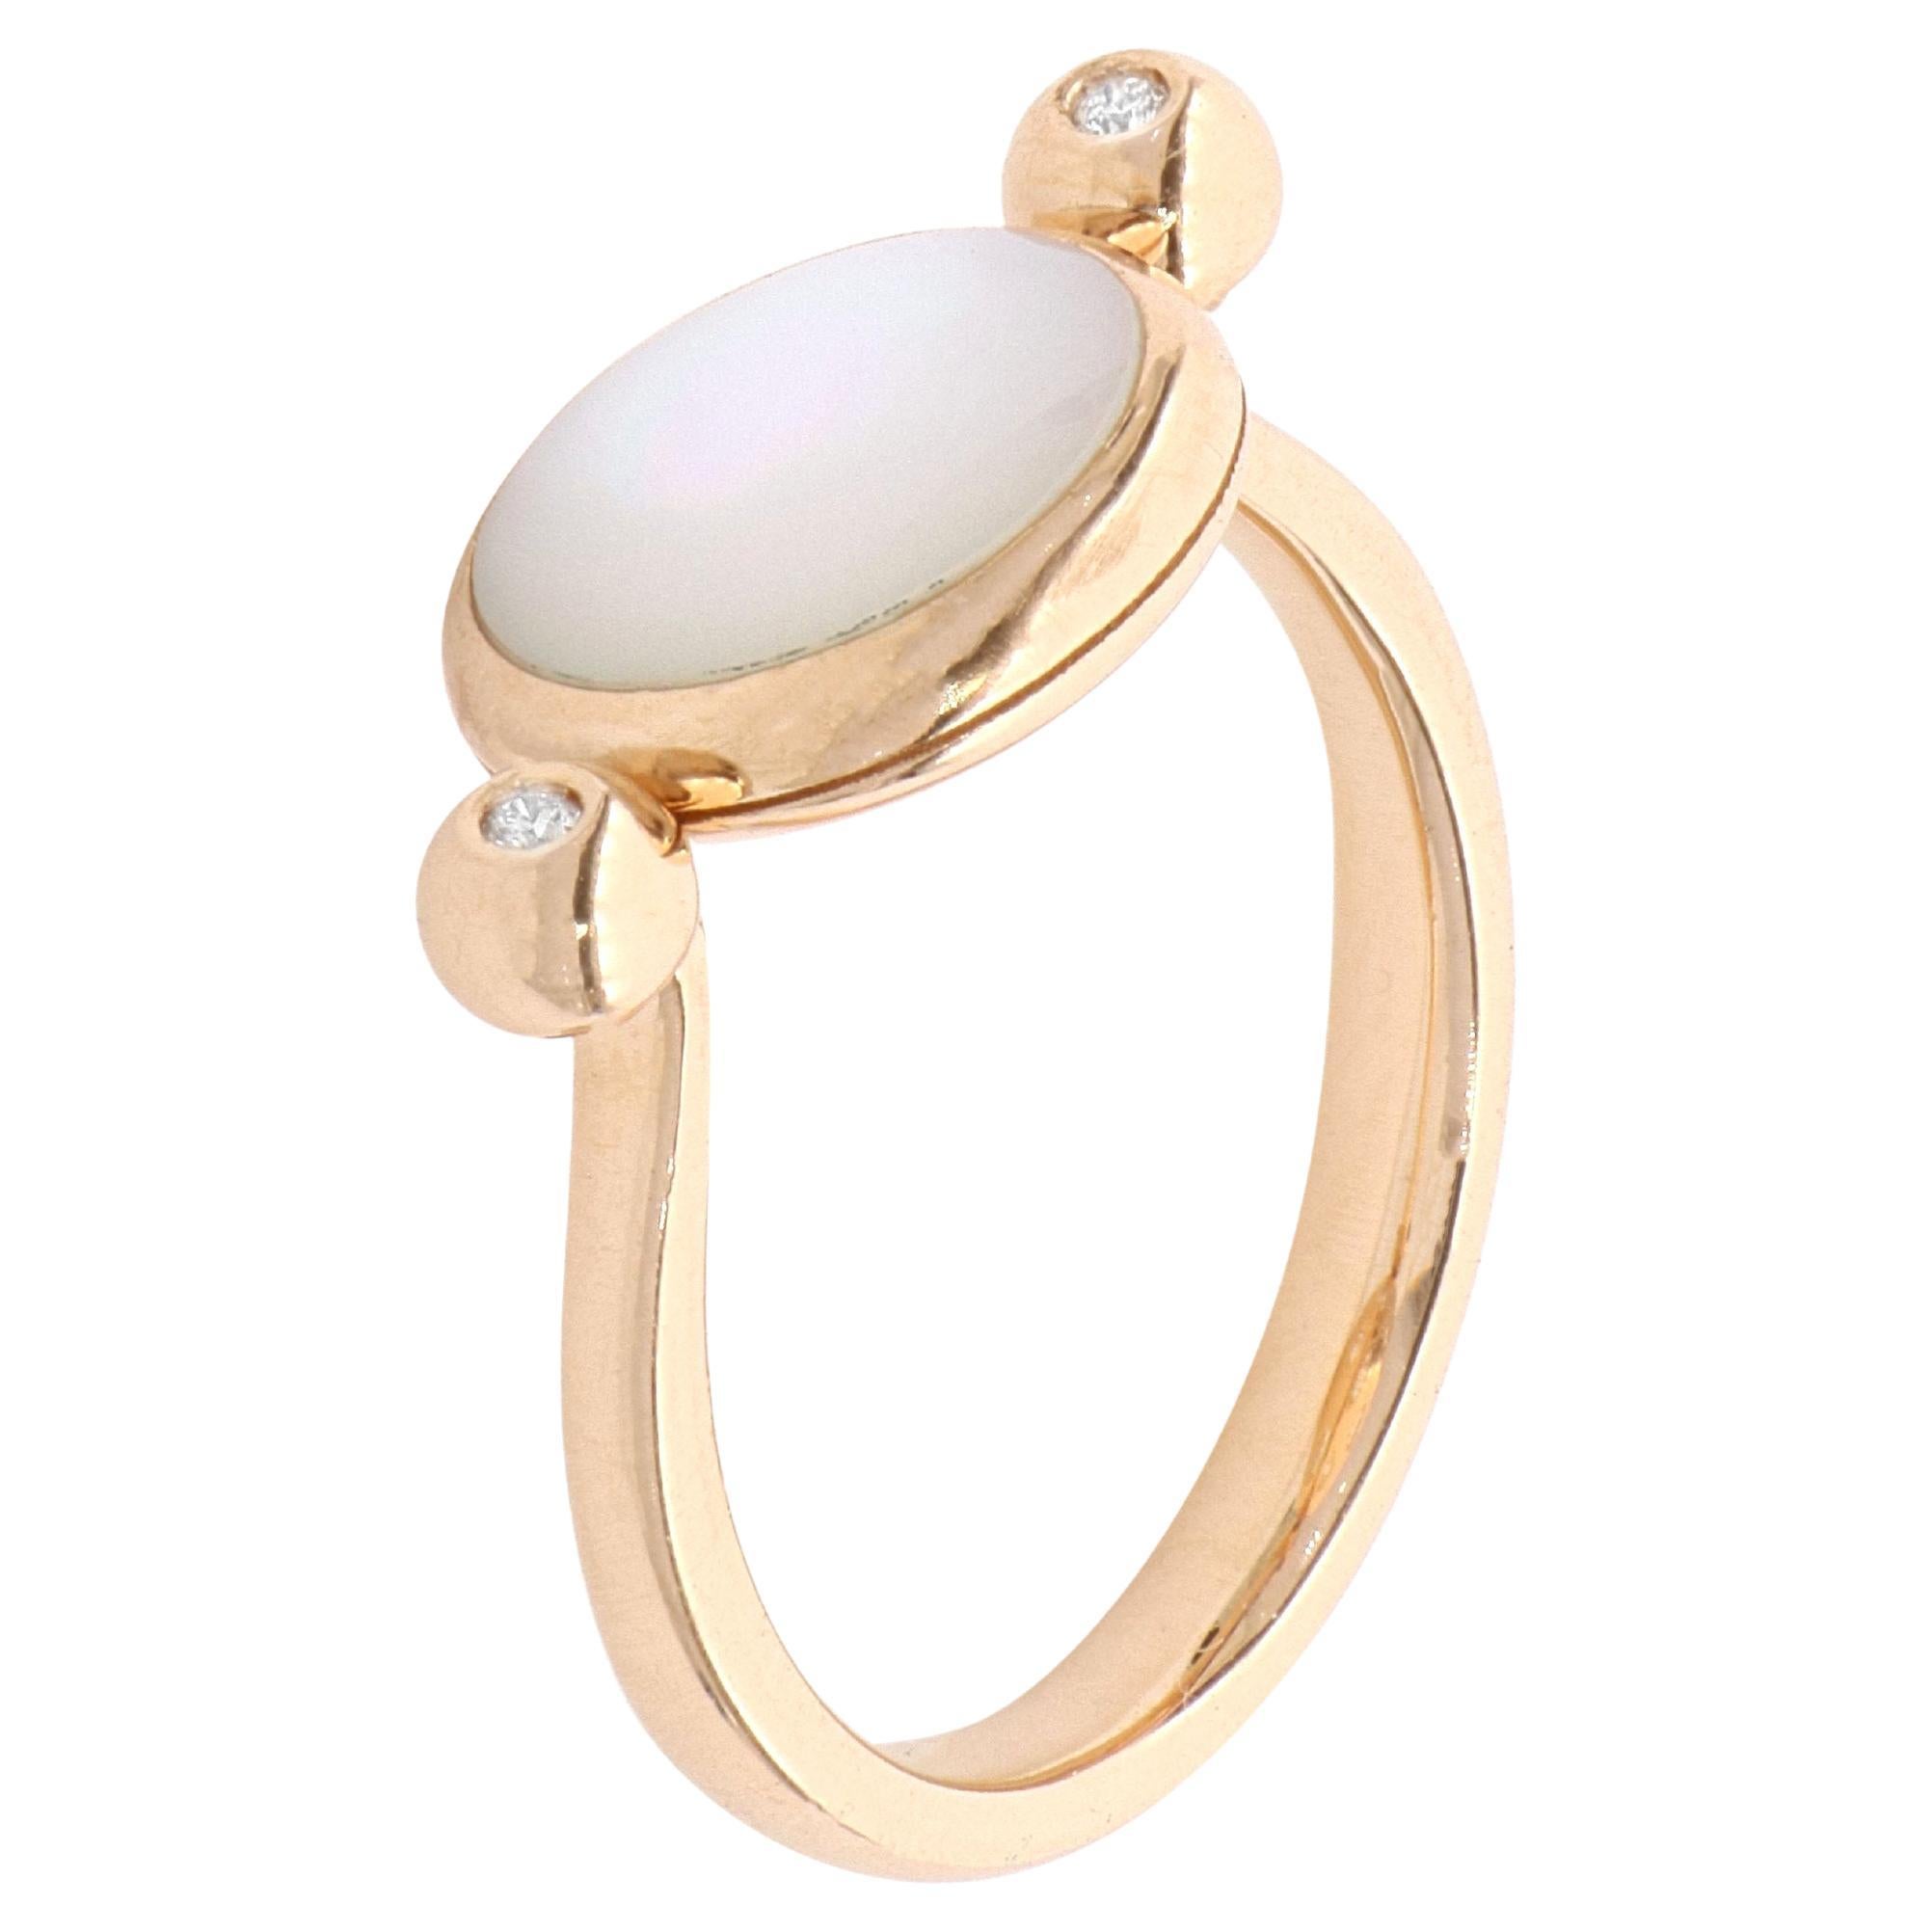 For Sale:  White Diamond White Gem Reversible Disc Ring in 18 Kt Rose Gold